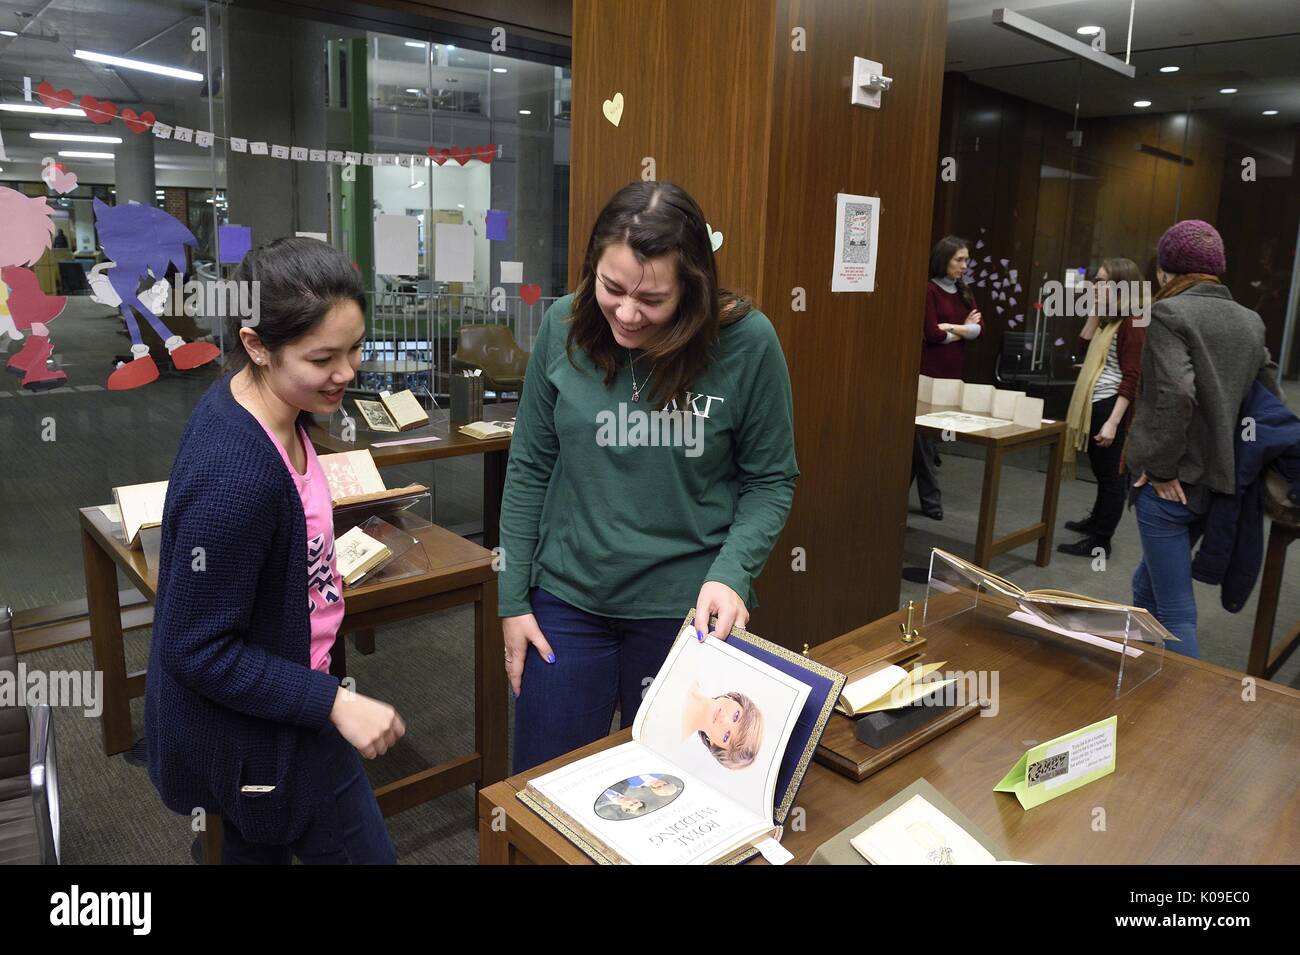 Zwei weibliche Studenten in einer Seite Lachen in einem Buch auf die schmutzige Bücher und Sehnsucht sieht Veranstaltung in der Bibliothek, 11. Februar 2016. Stockfoto